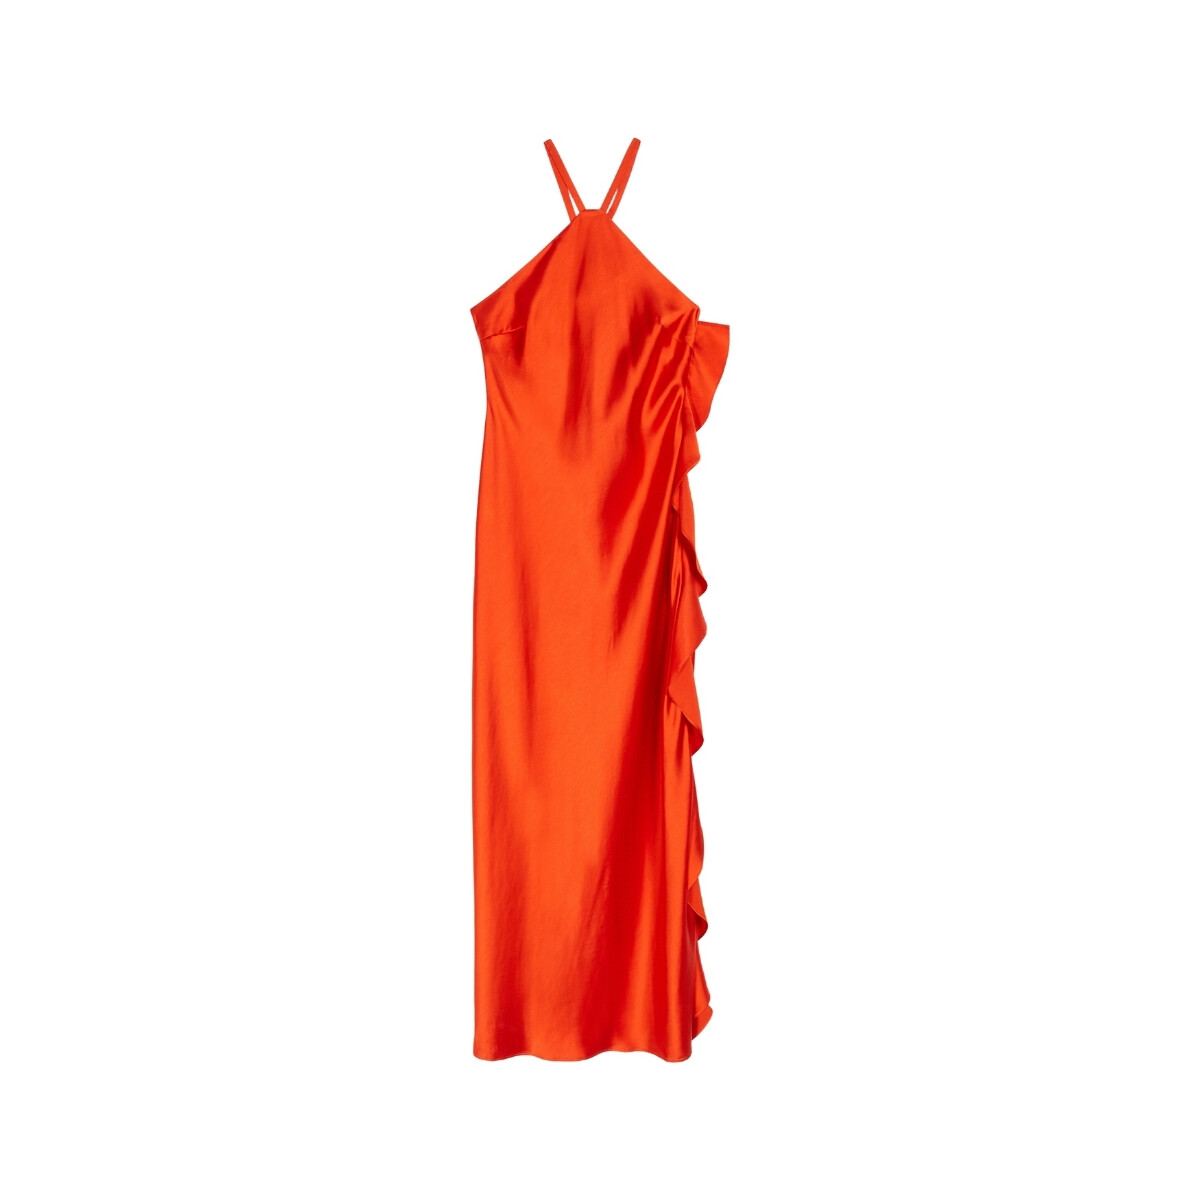 Vêtements Femme Soins corps & bain  Orange